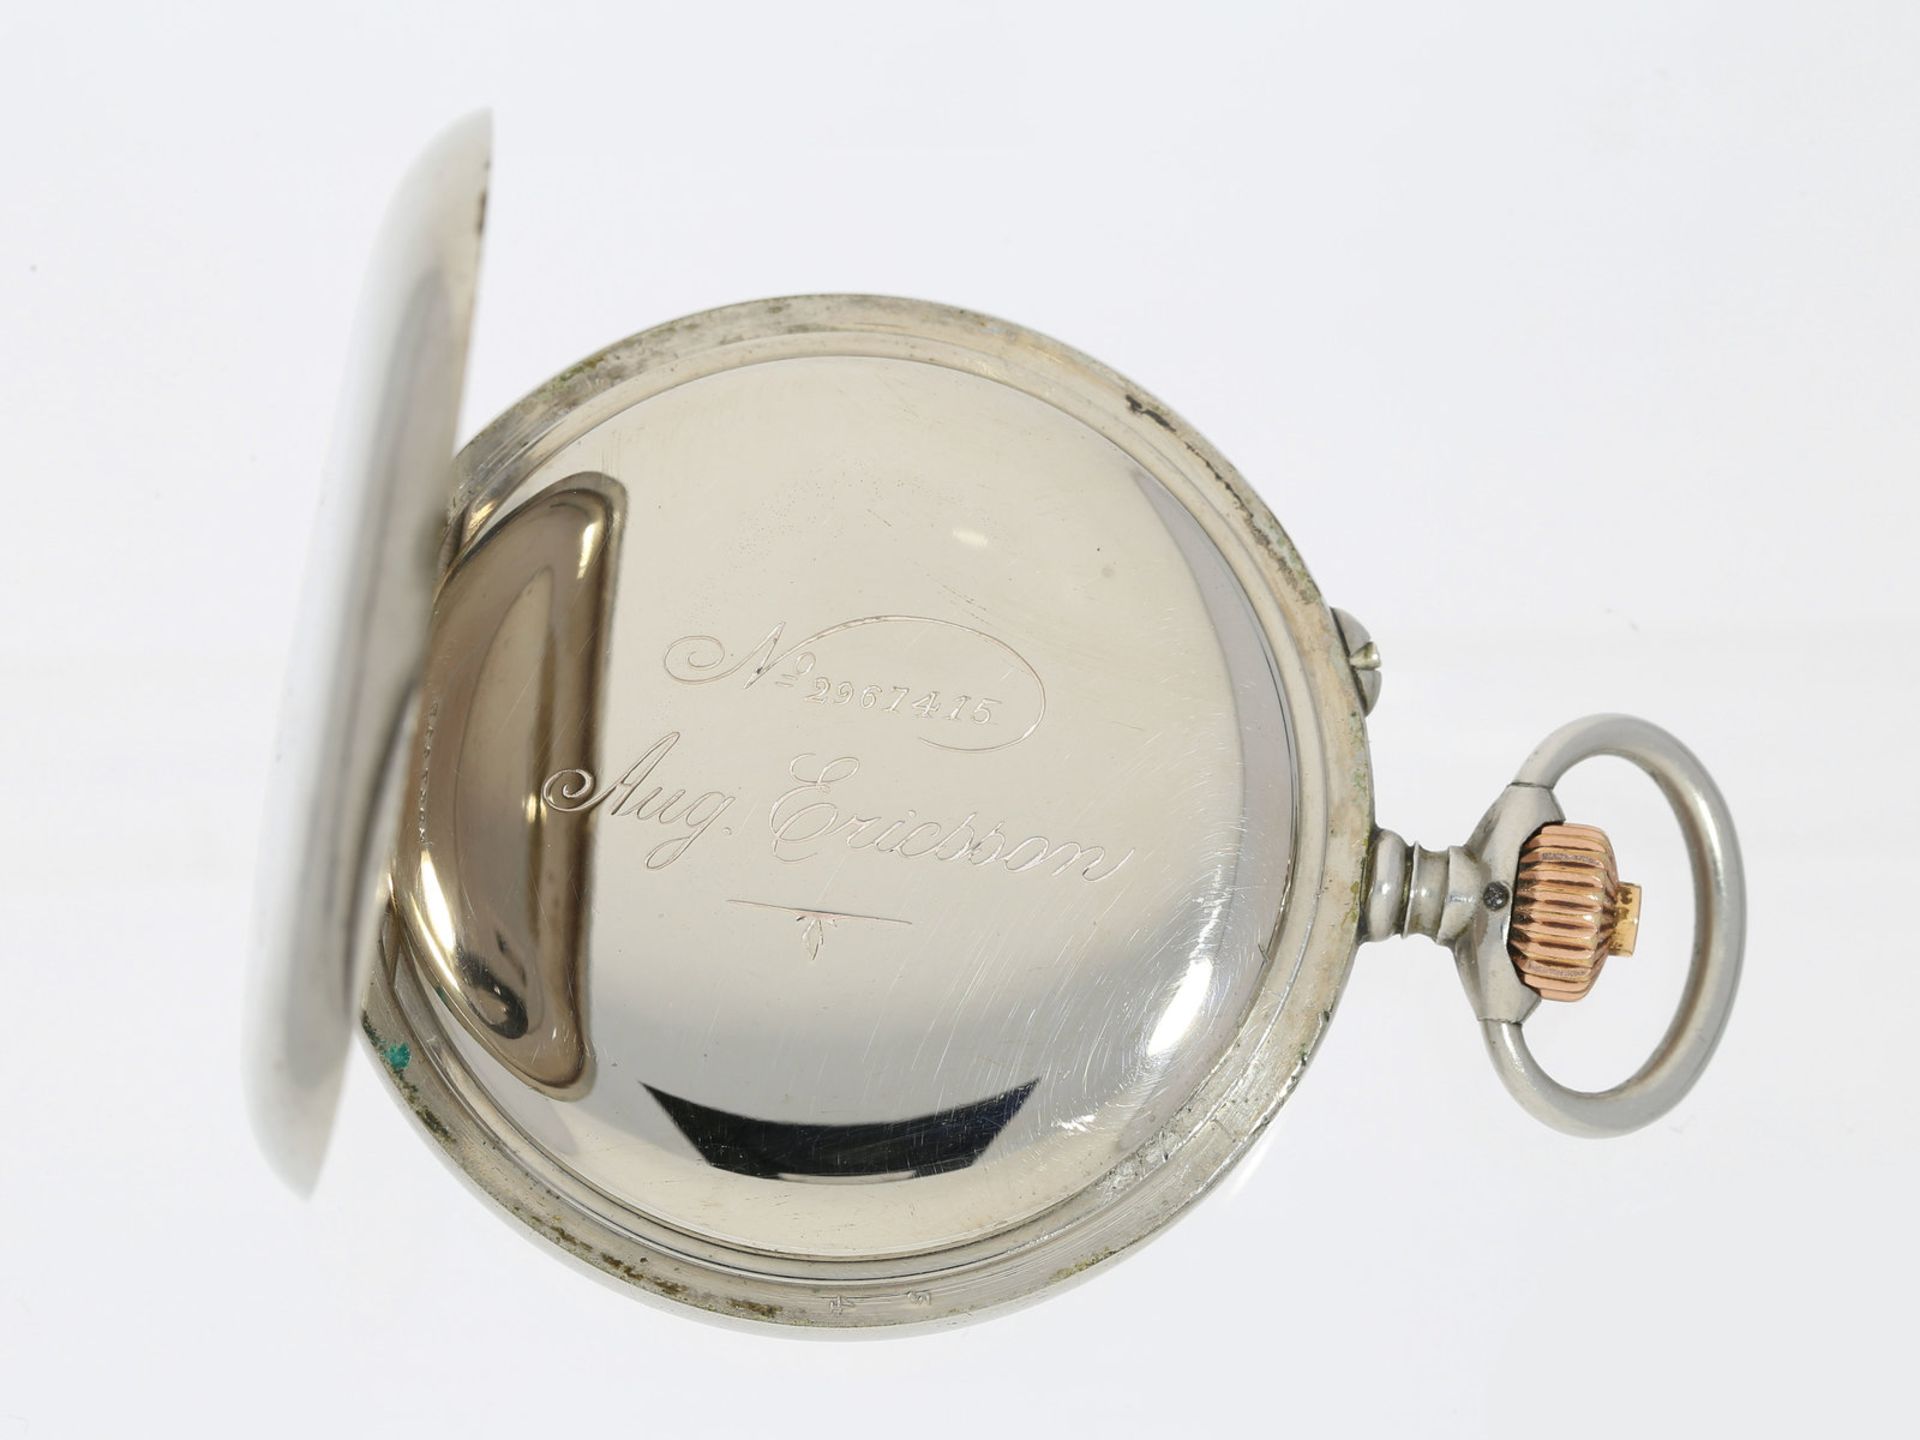 Taschenuhr: großer und seltener Militär-Chronograph der russischen Marine, August Ericsson No. - Image 2 of 3